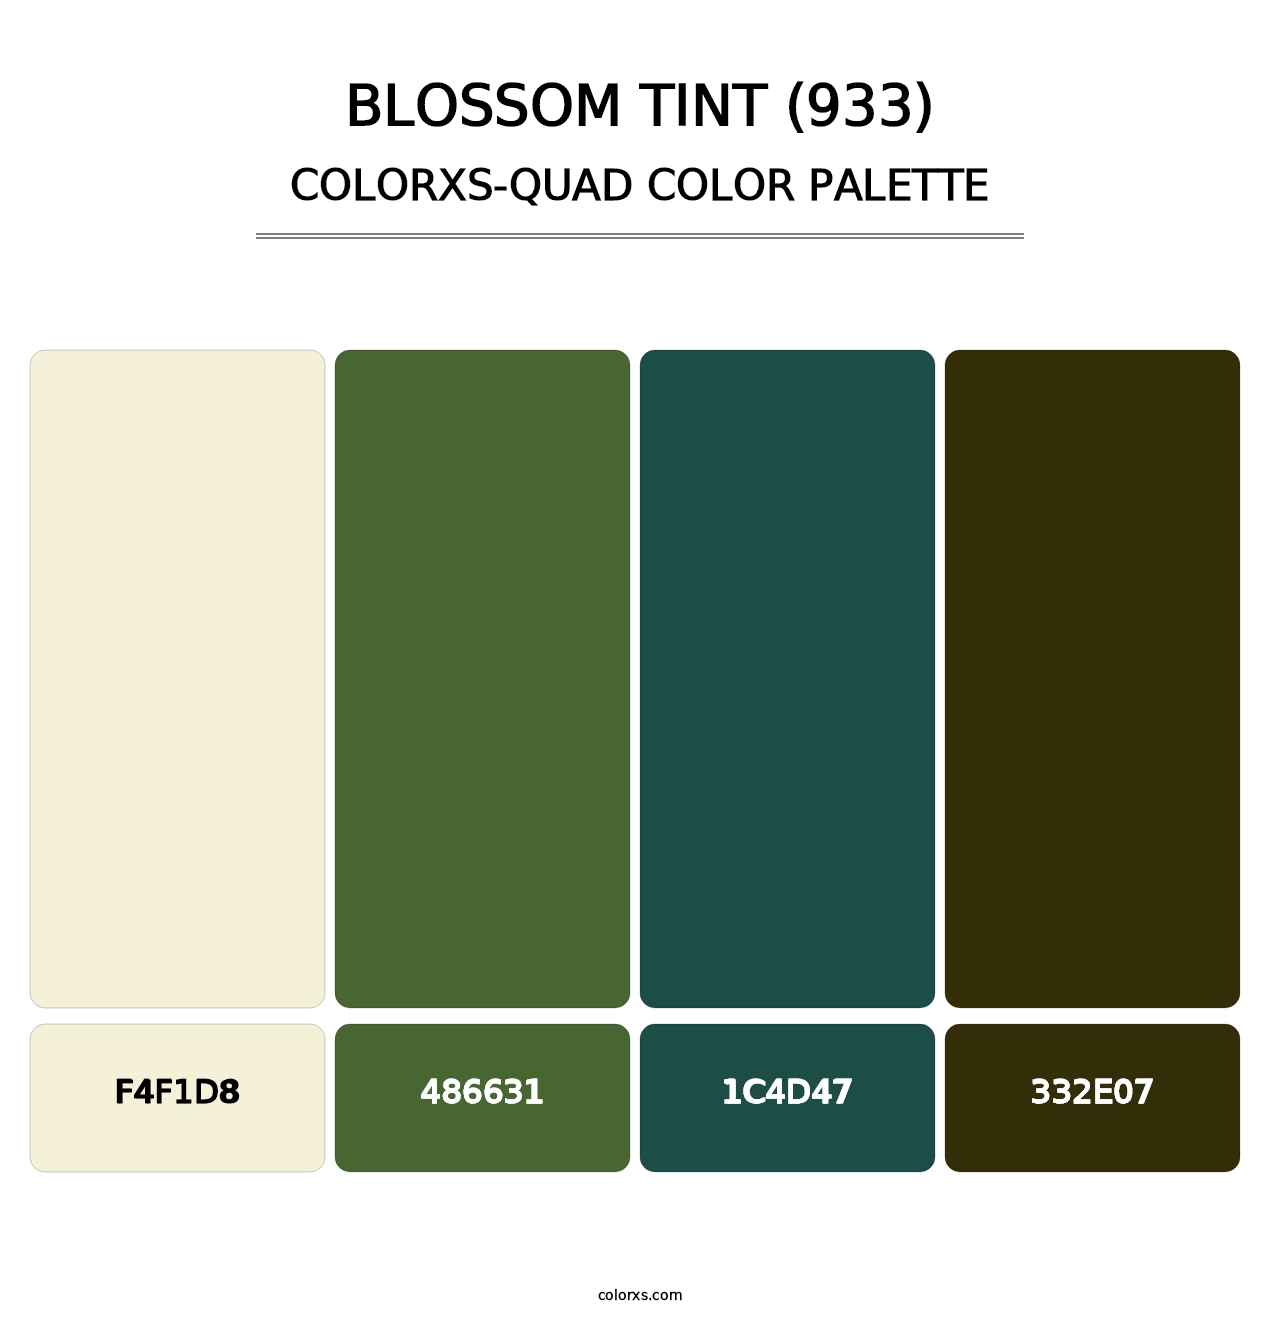 Blossom Tint (933) - Colorxs Quad Palette